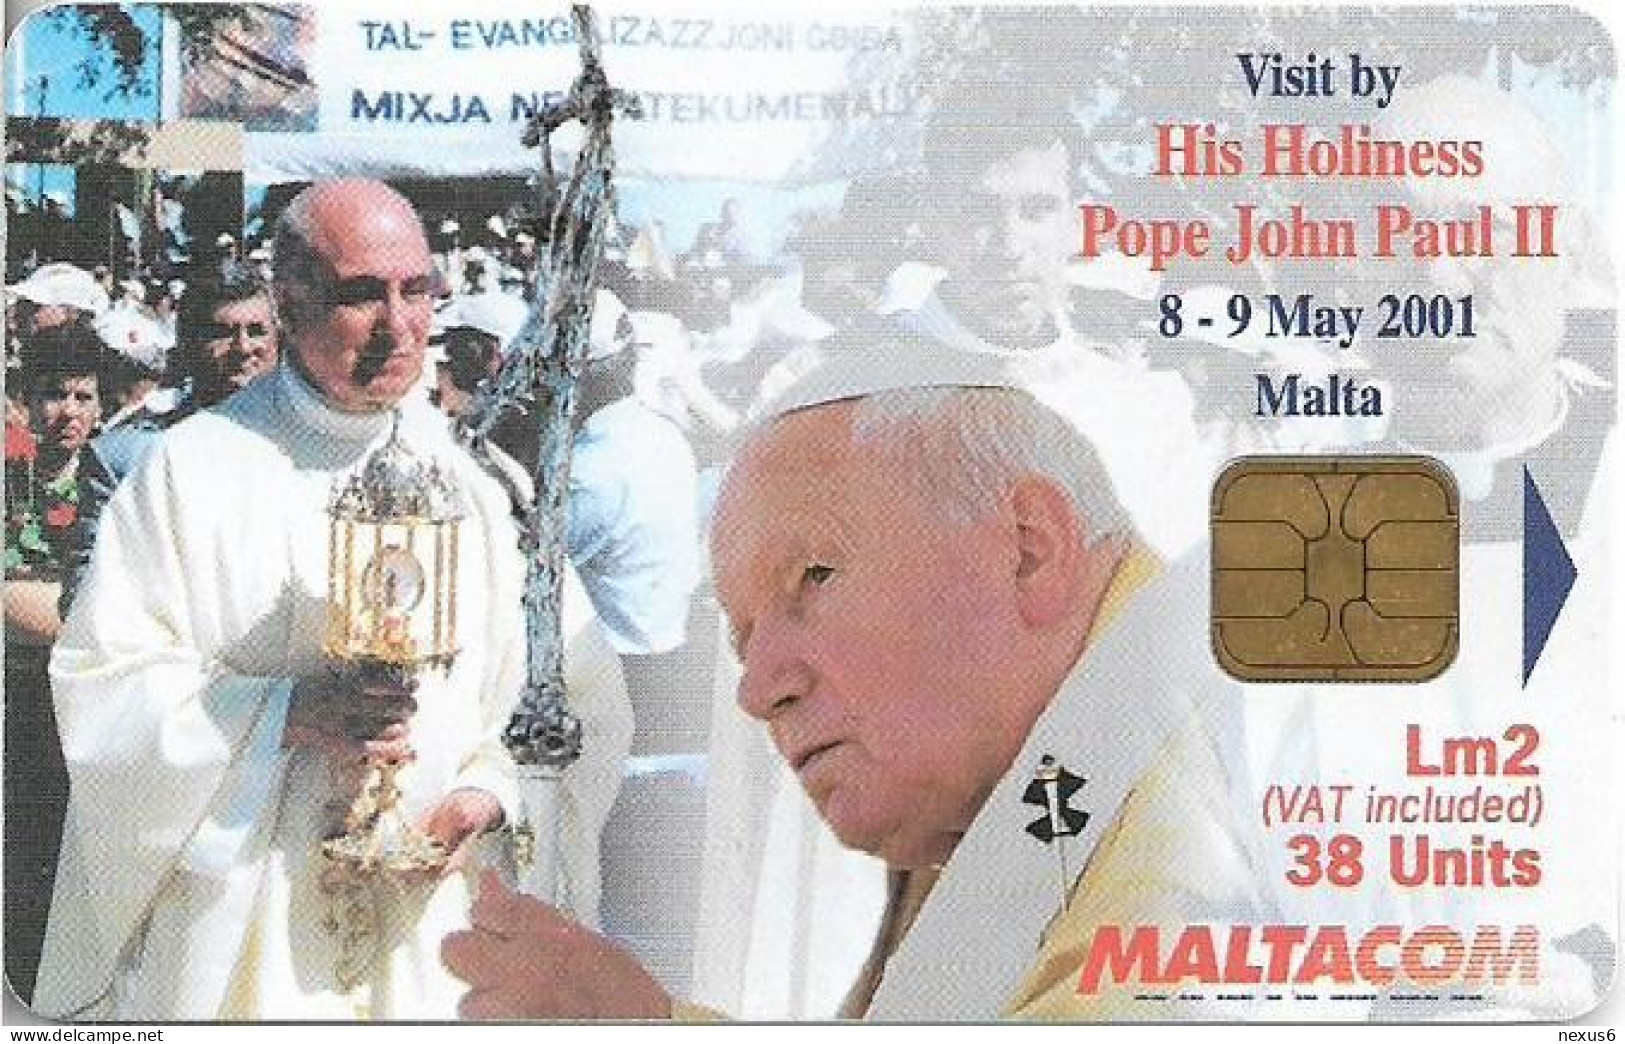 Malta - Maltacom - Pope's Visit 4 - 11.2001, 38U, 25.000ex, Used - Malte